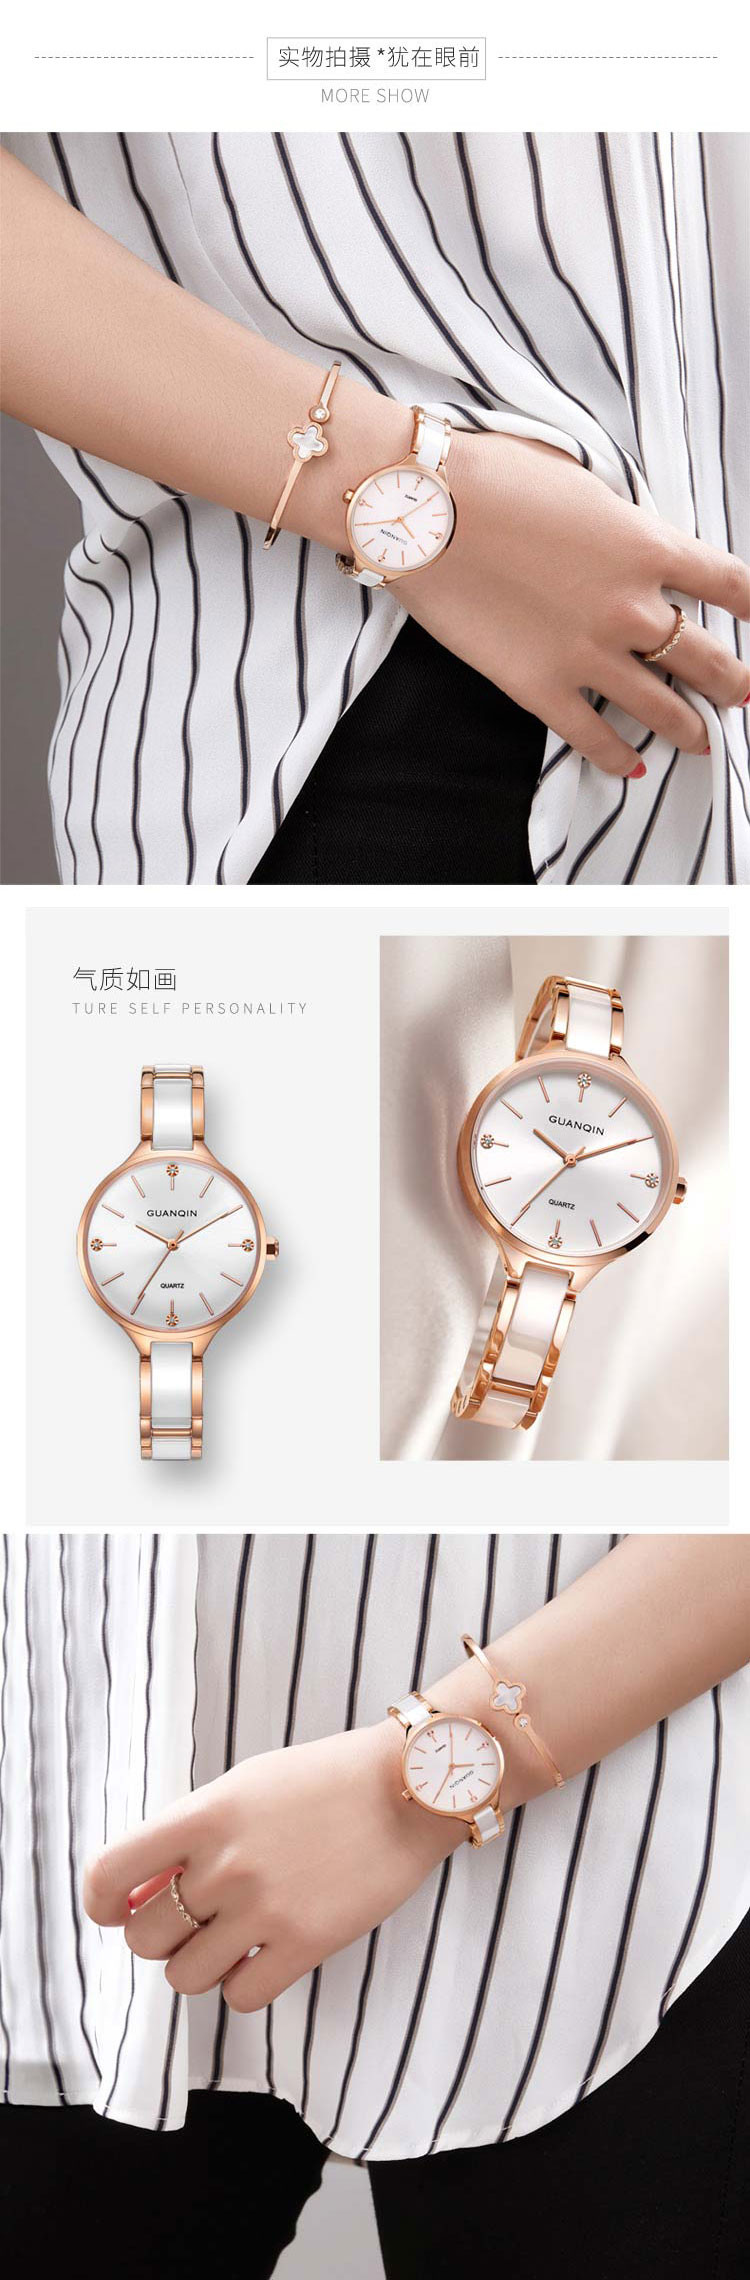 冠琴/GUANQIN 女士石英表超薄机械时尚手表 GS19129